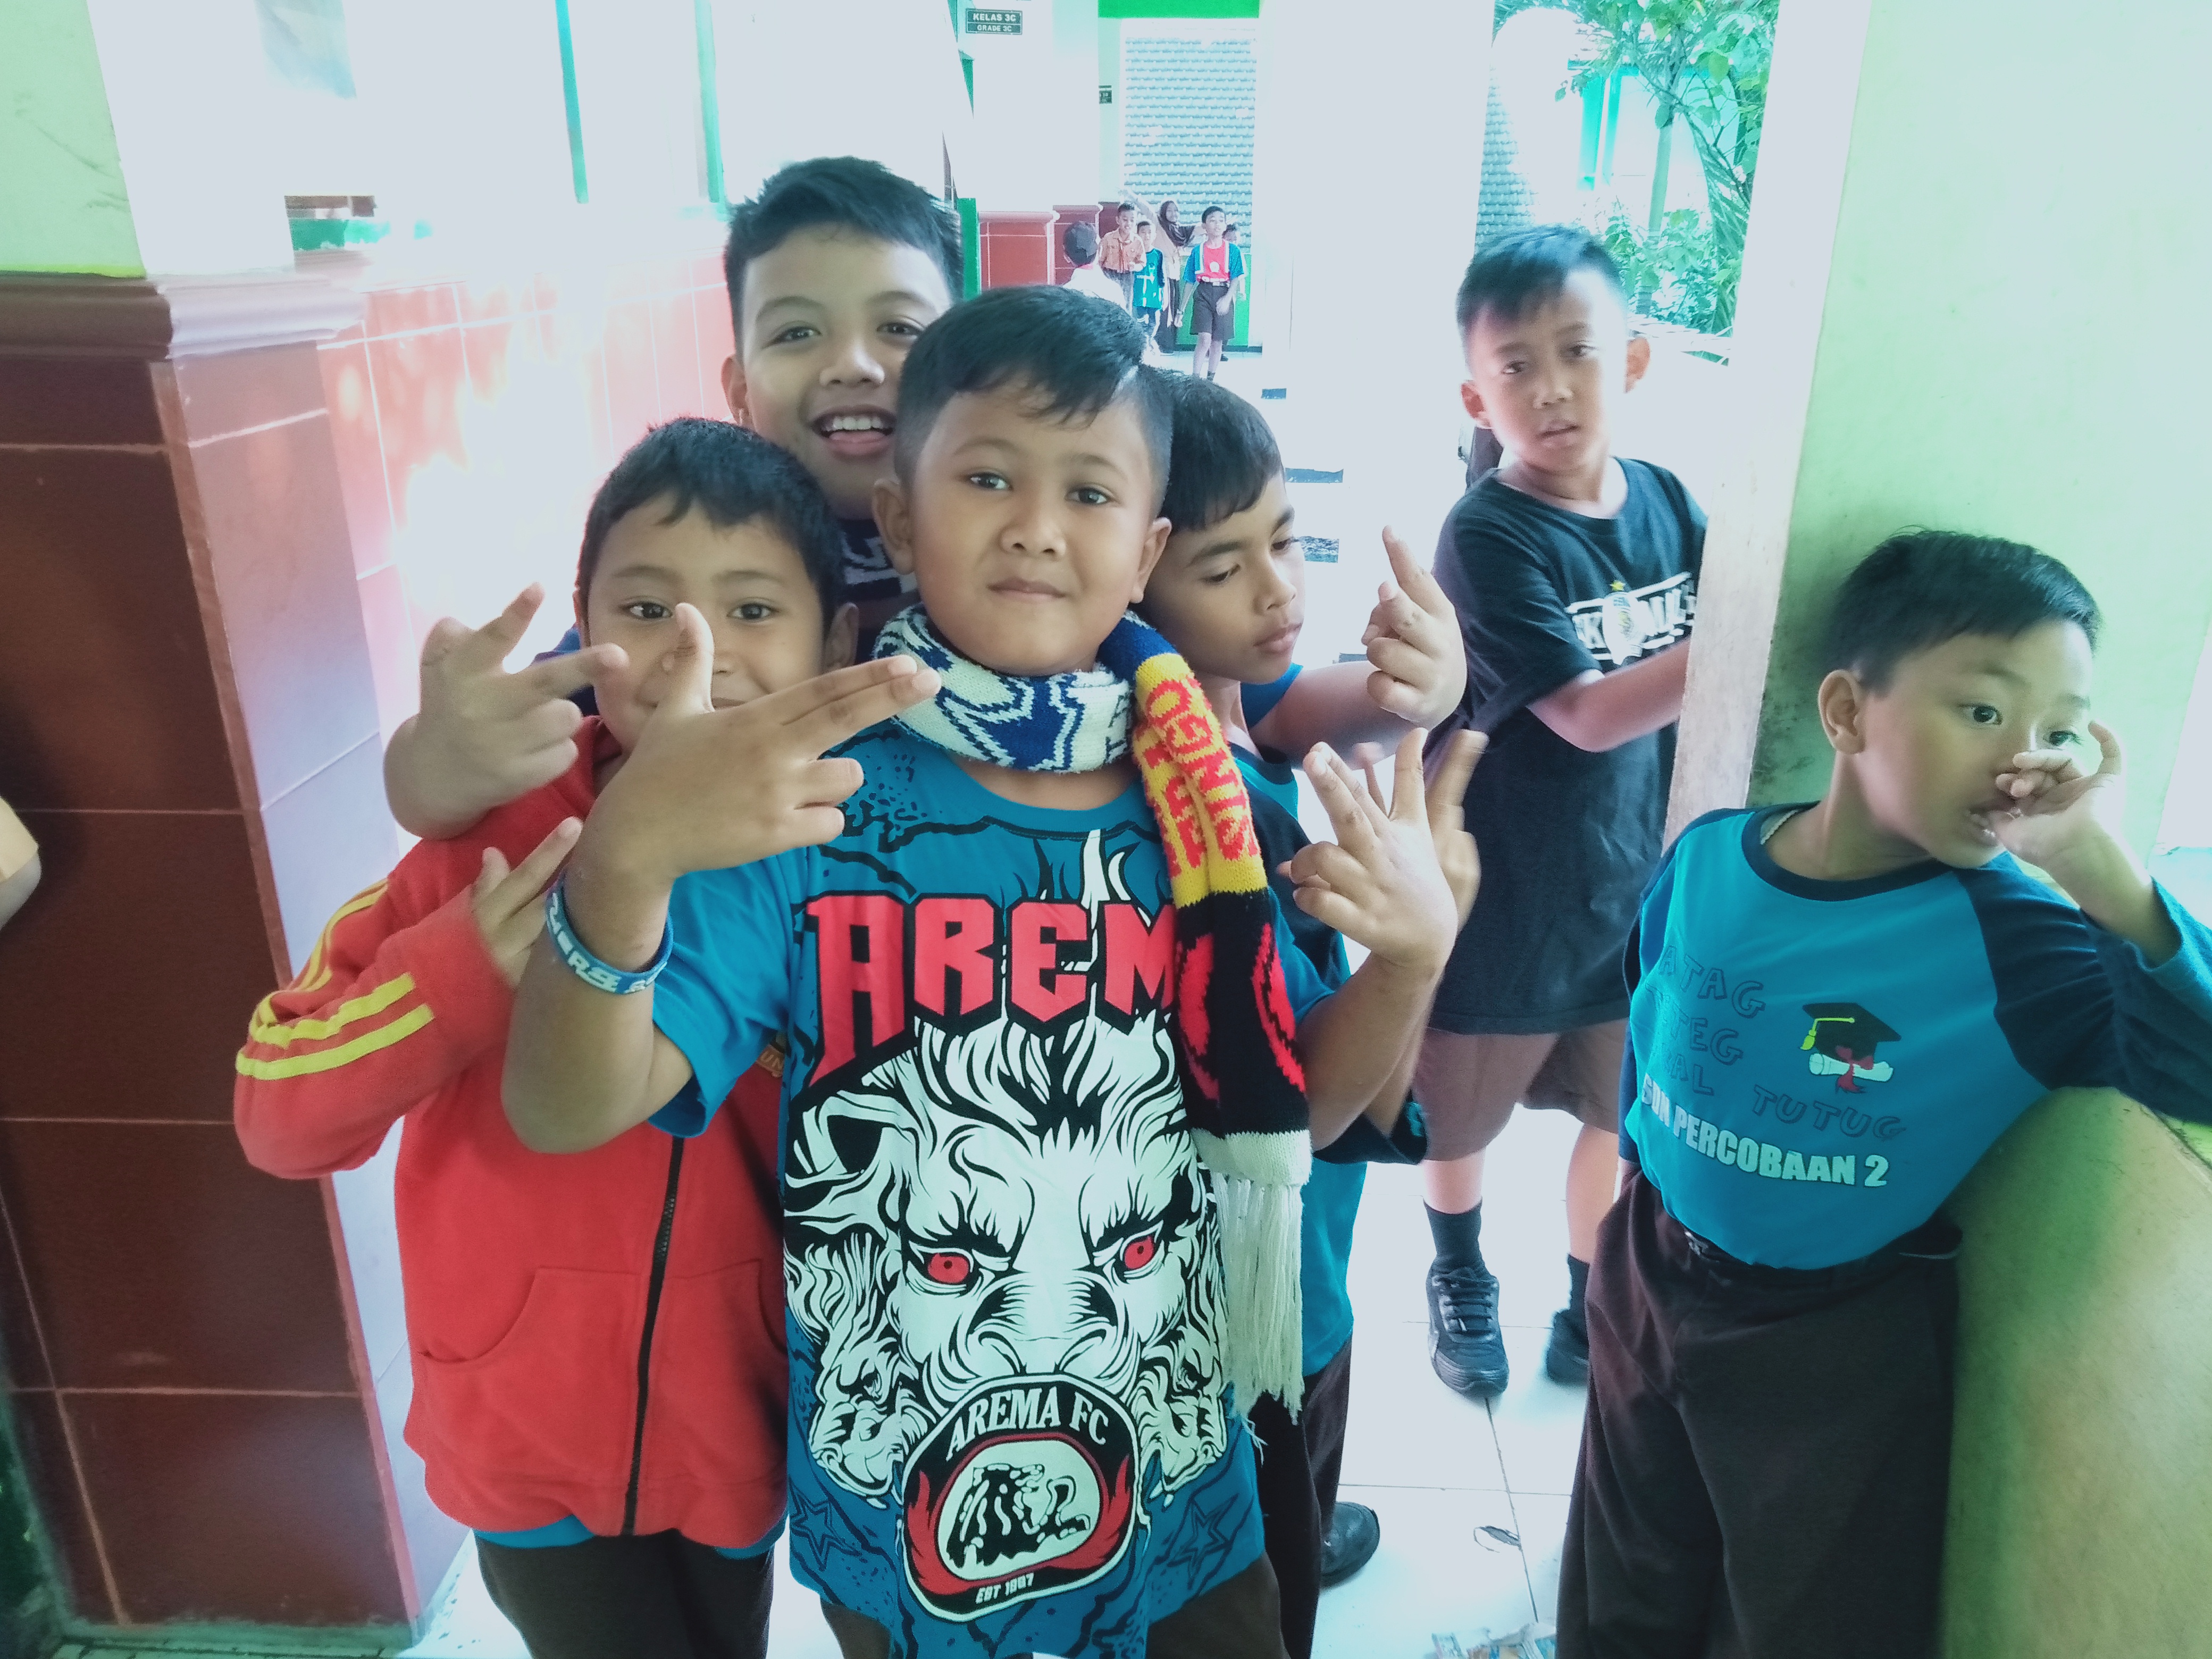 Siswa-siswa SDN Percobaan 2 Malang mengenakan kostum Aremania saat sekolah. (Foto: Fajar/ngopibareng)